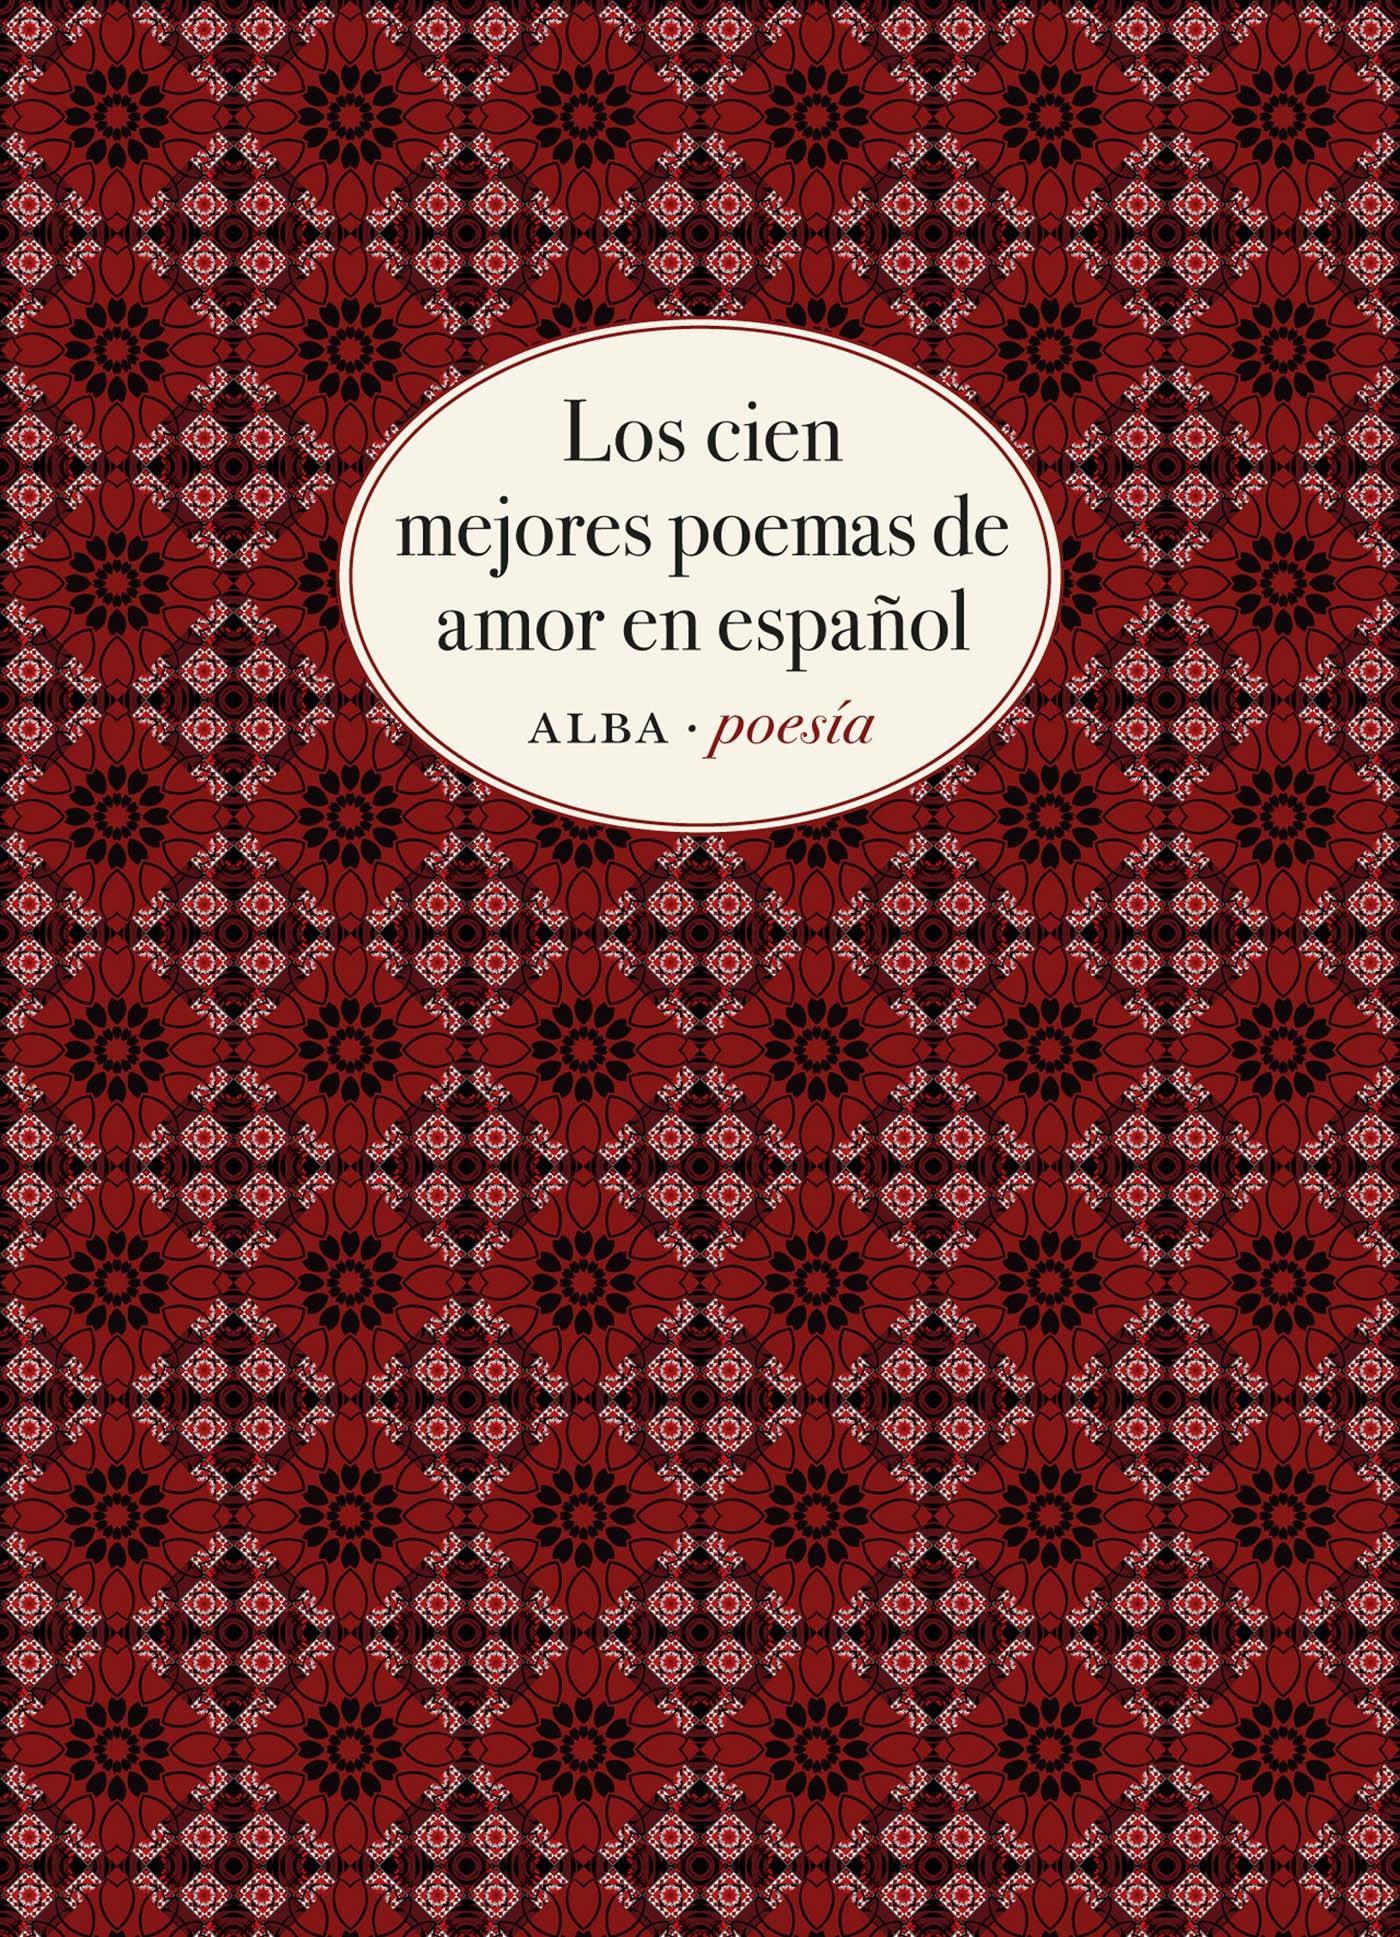 Los cien mejores poemas de amor en español. 